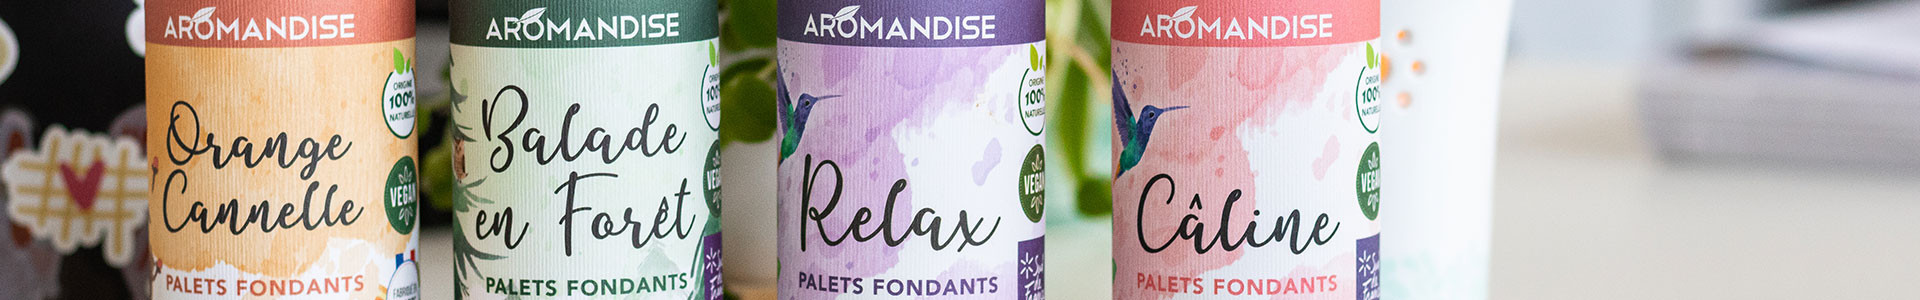 Palets fondants parfumés aux huiles essentielles fabriqués en France - Aromandise